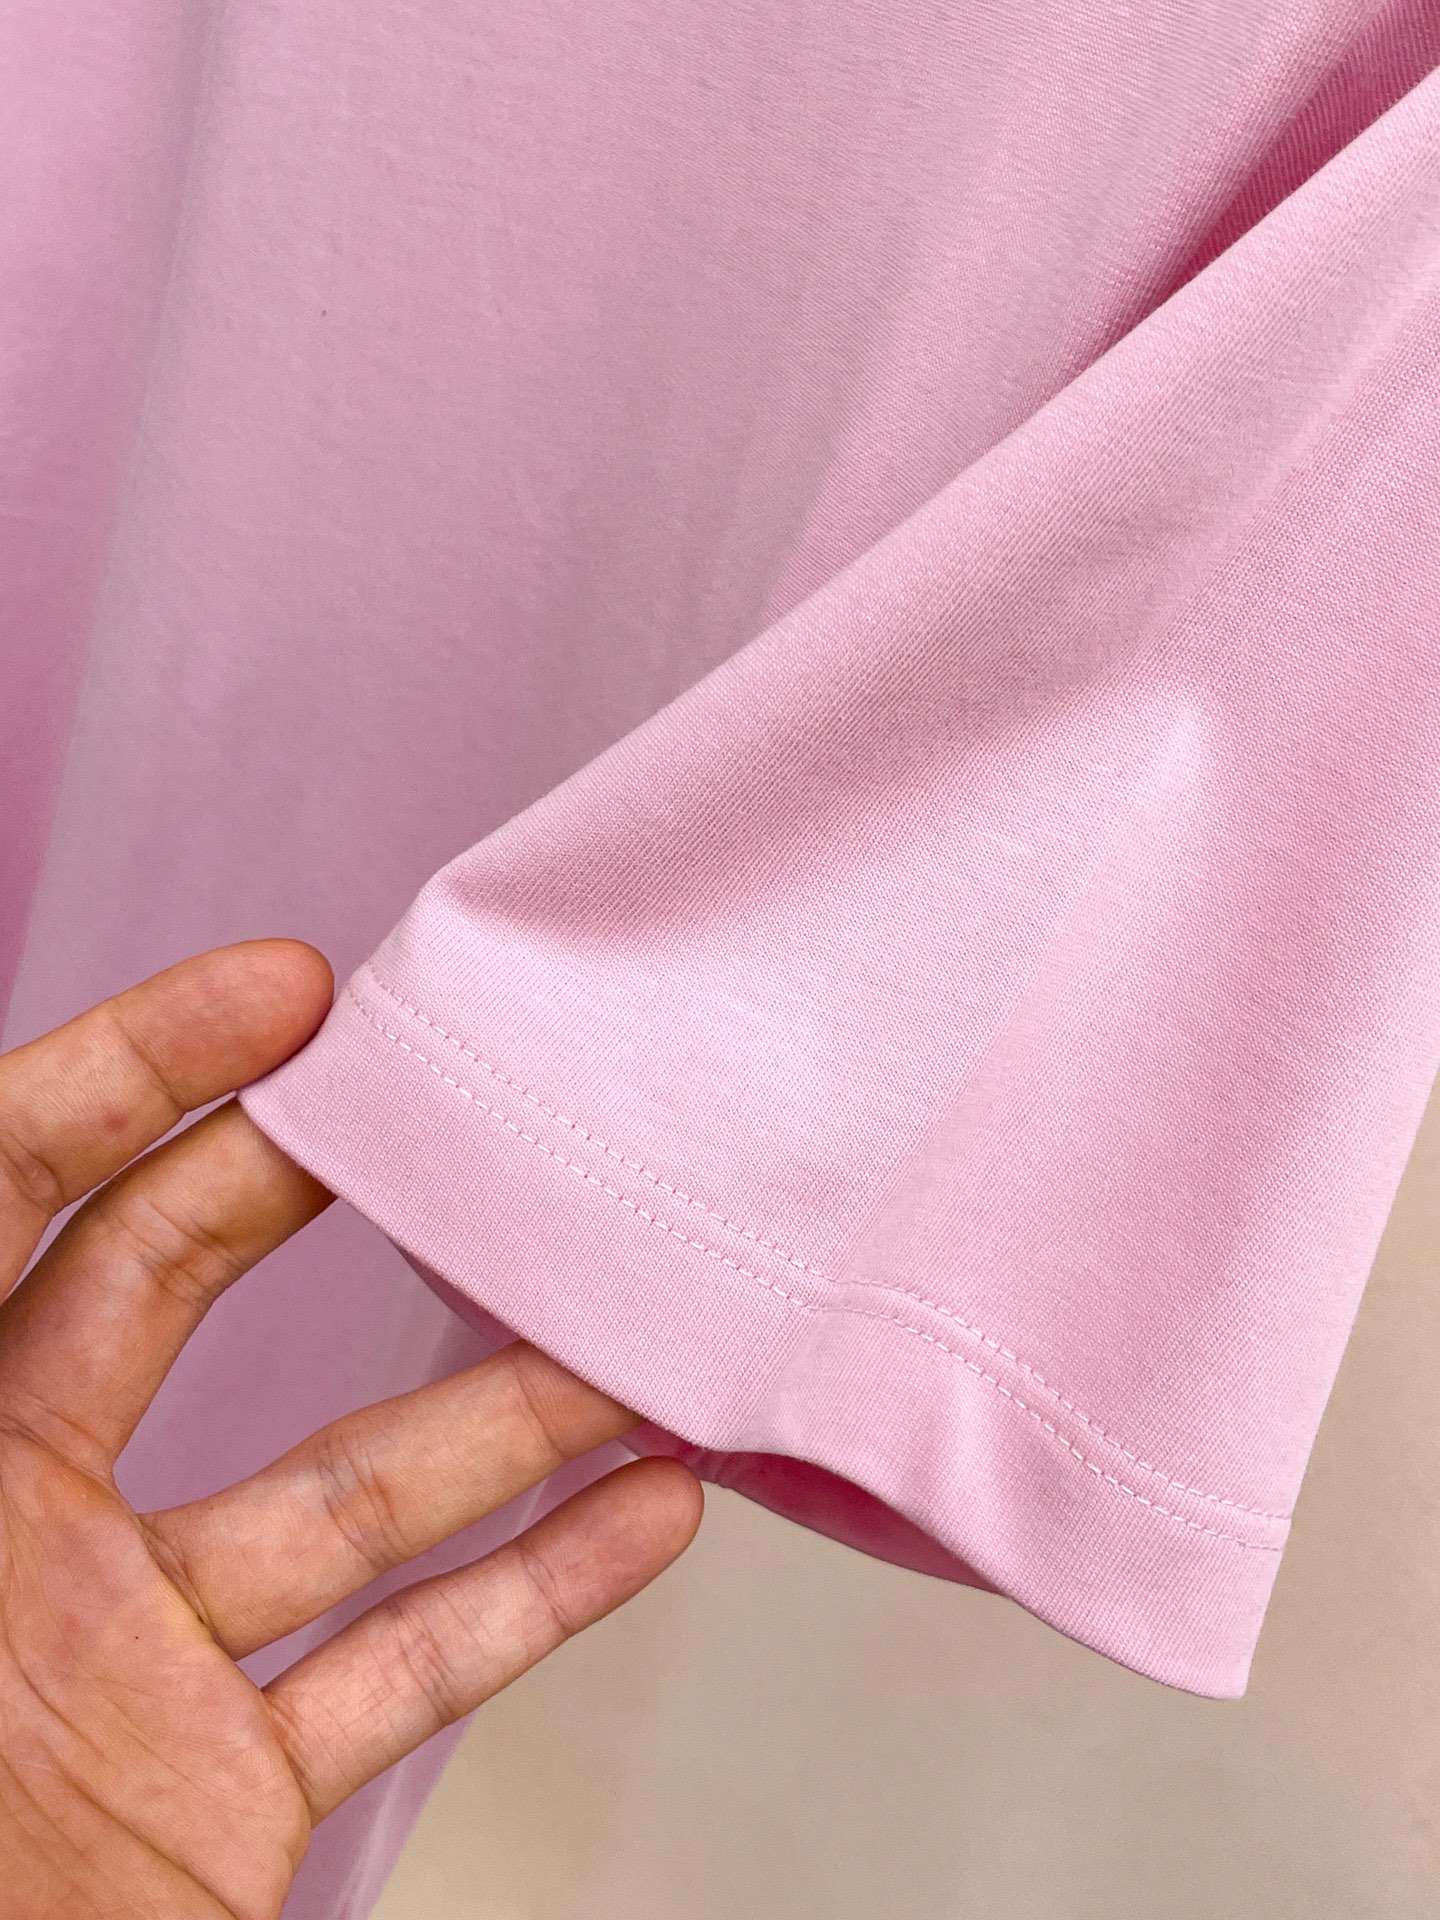 prada の t シャツ激安通販 短袖 ゆったり 純綿 トップス プリント 柔らかい シンプル ピンク_7